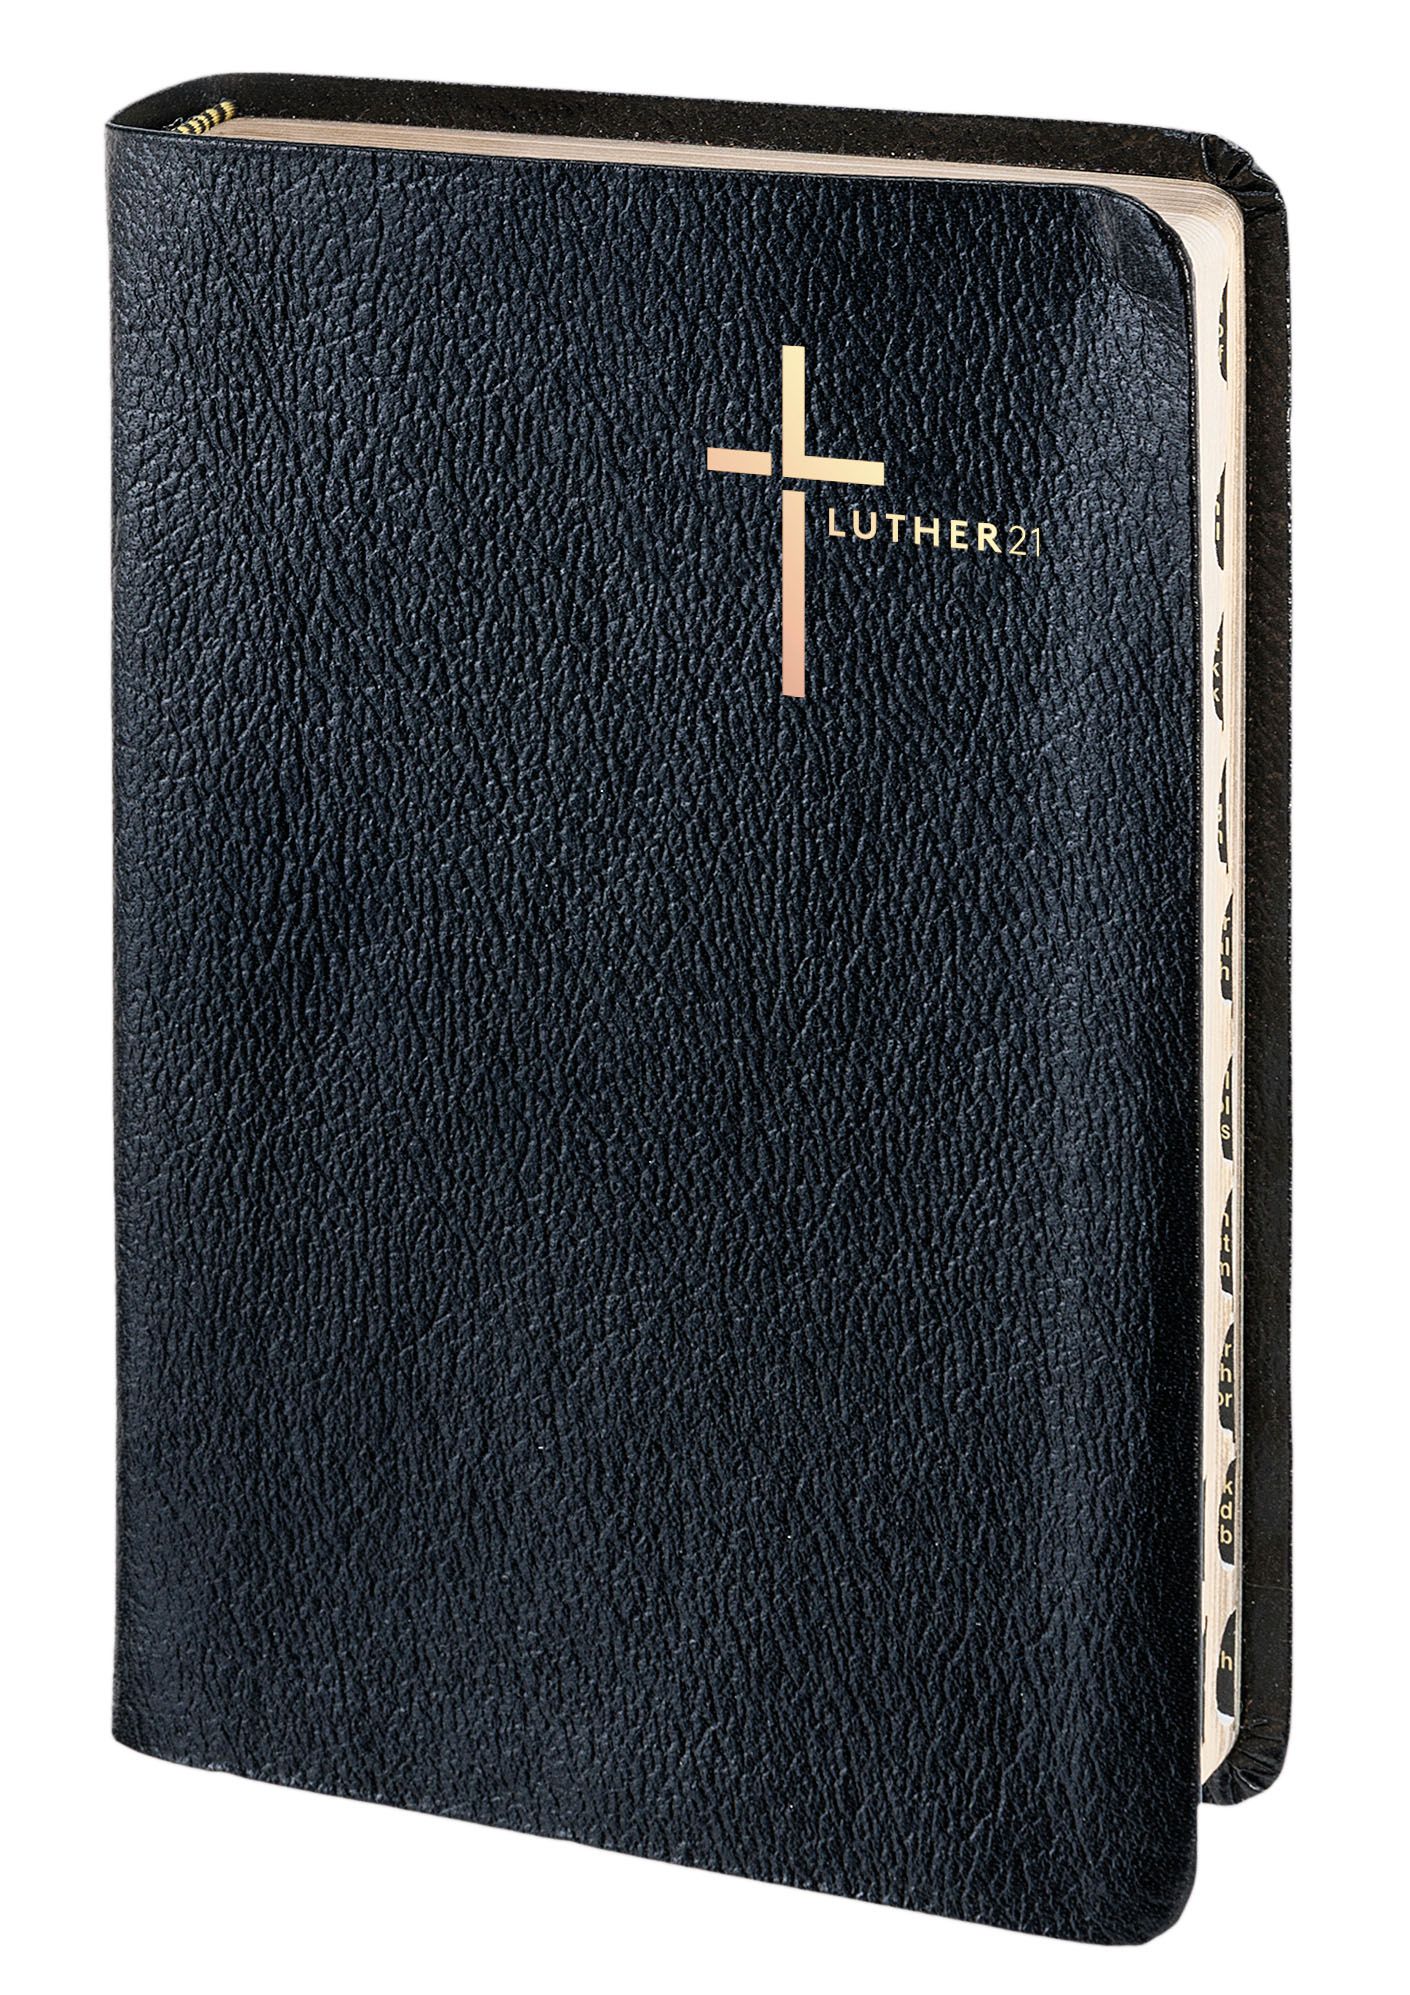 Luther21 - Standardausgabe - Lederfaserstoff schwarz